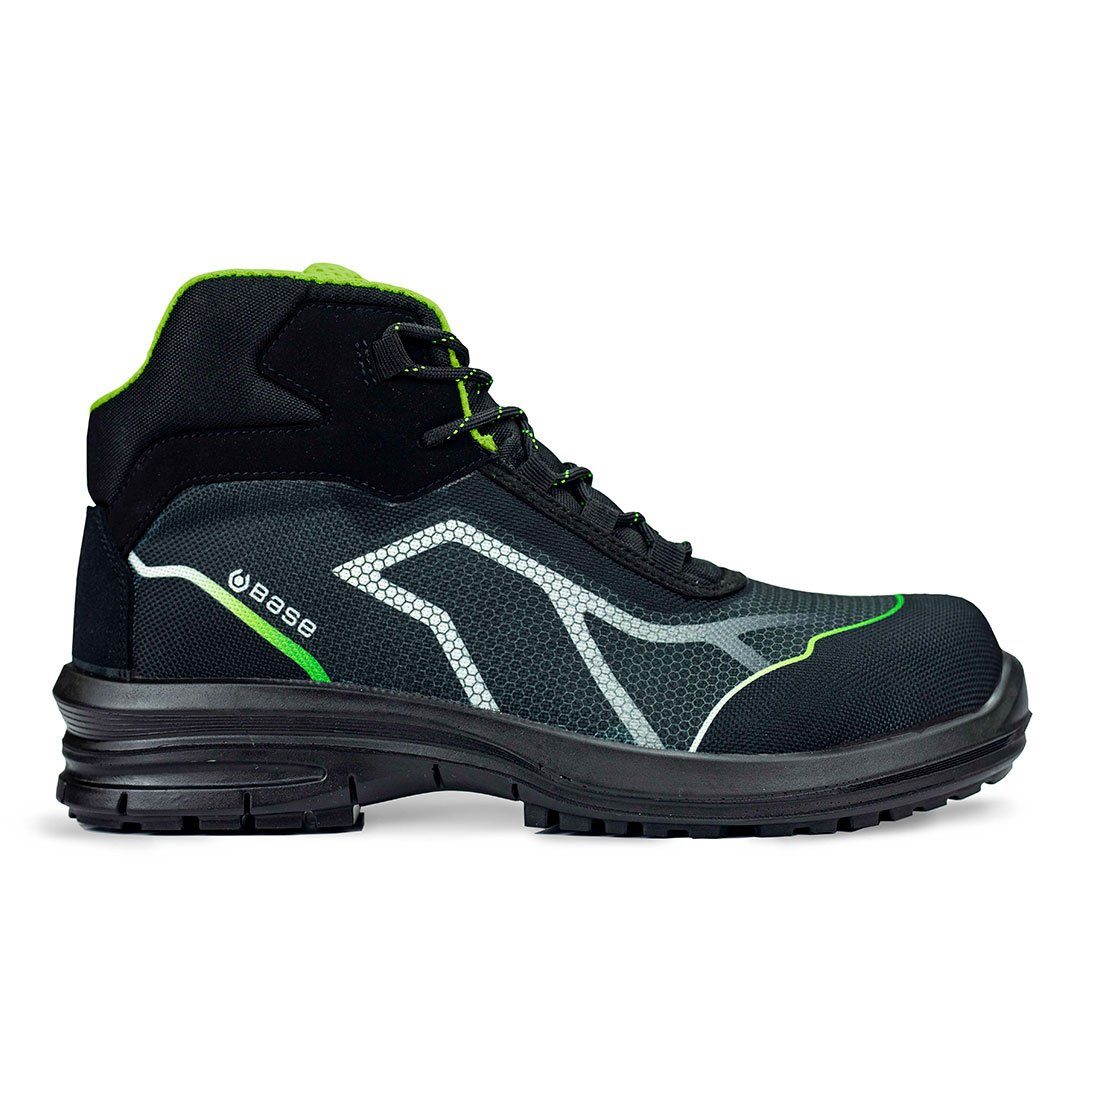 Base Footwear OREN (Knöchelstiefel) Sicherheitsschuh metallfrei knöchelhoch Sicherheitsschuhe S3 schwarz/grün TOP